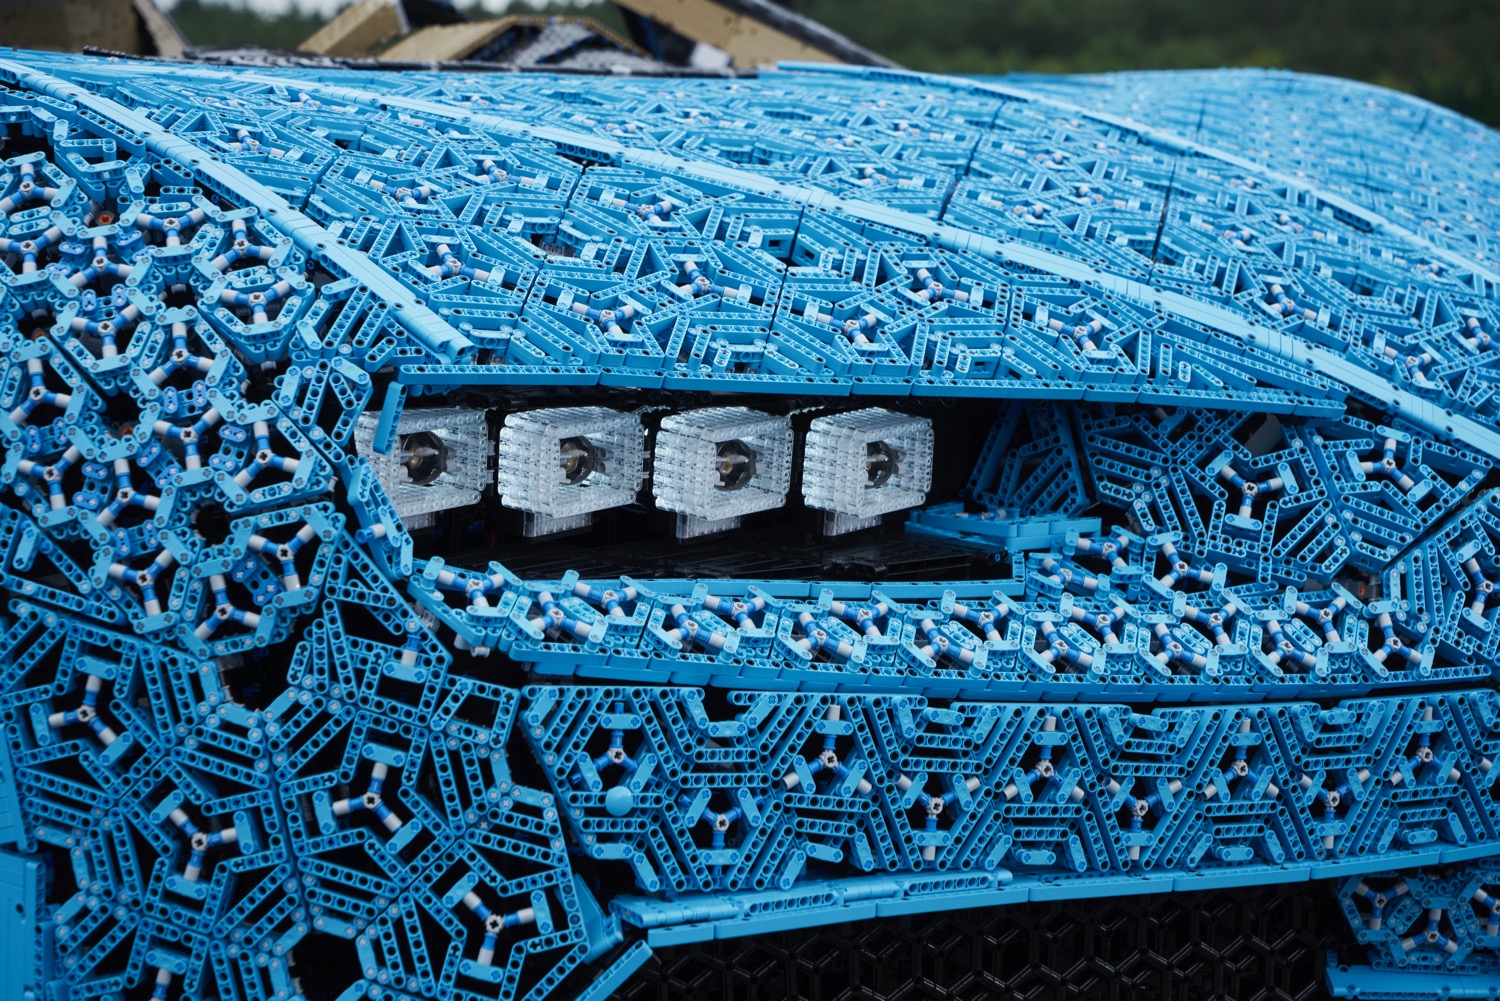 Life-size Lego Bugatti Chiron